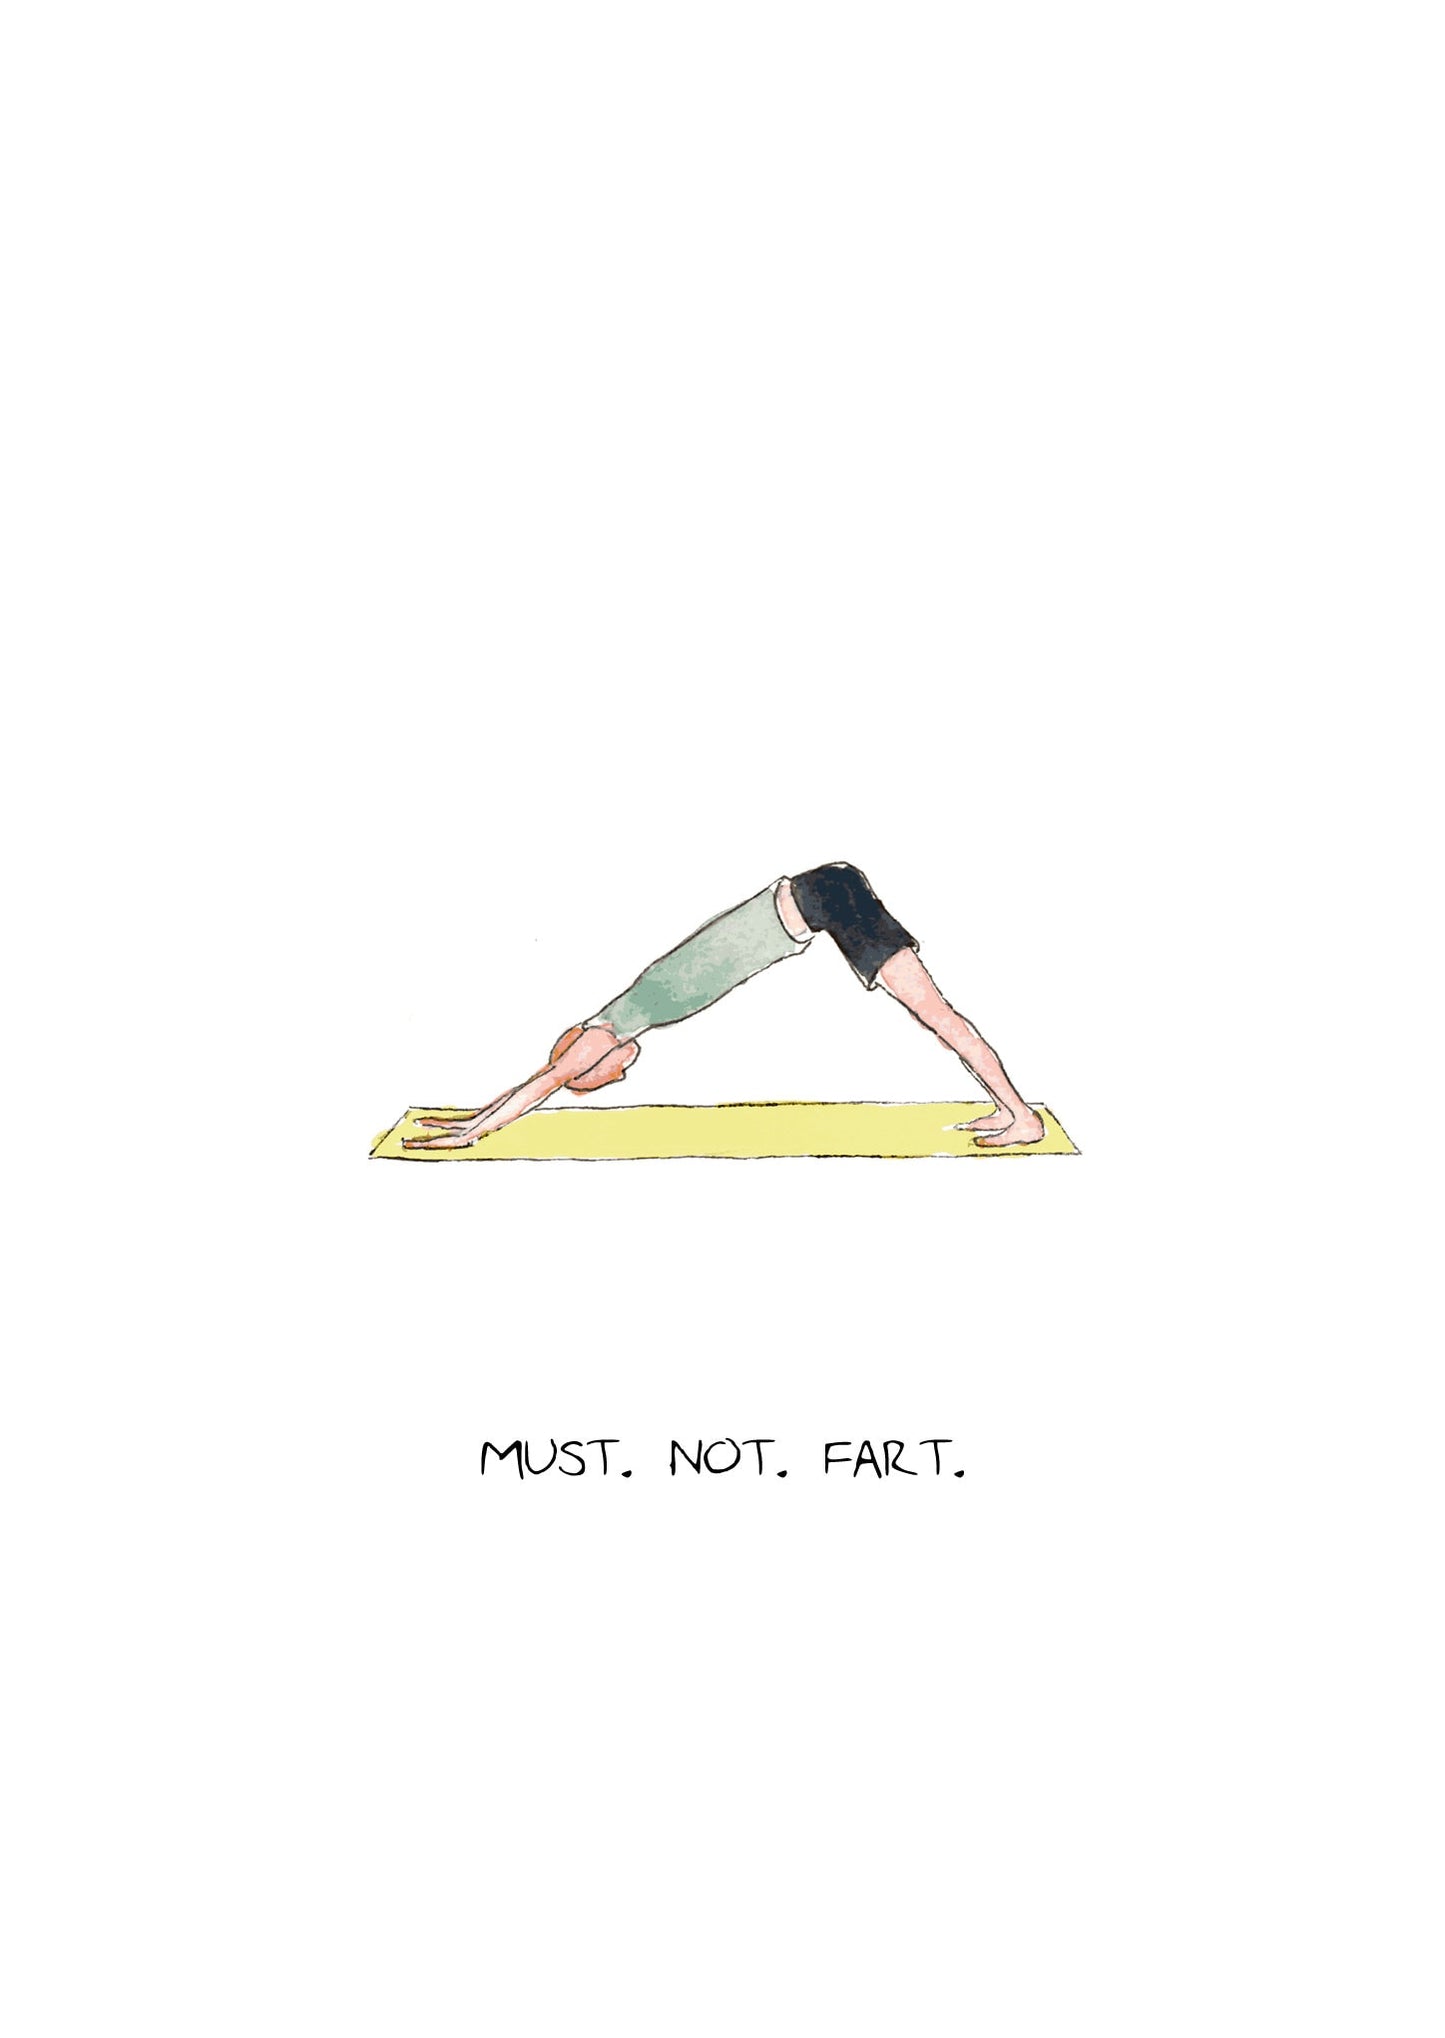 Yoga Fart